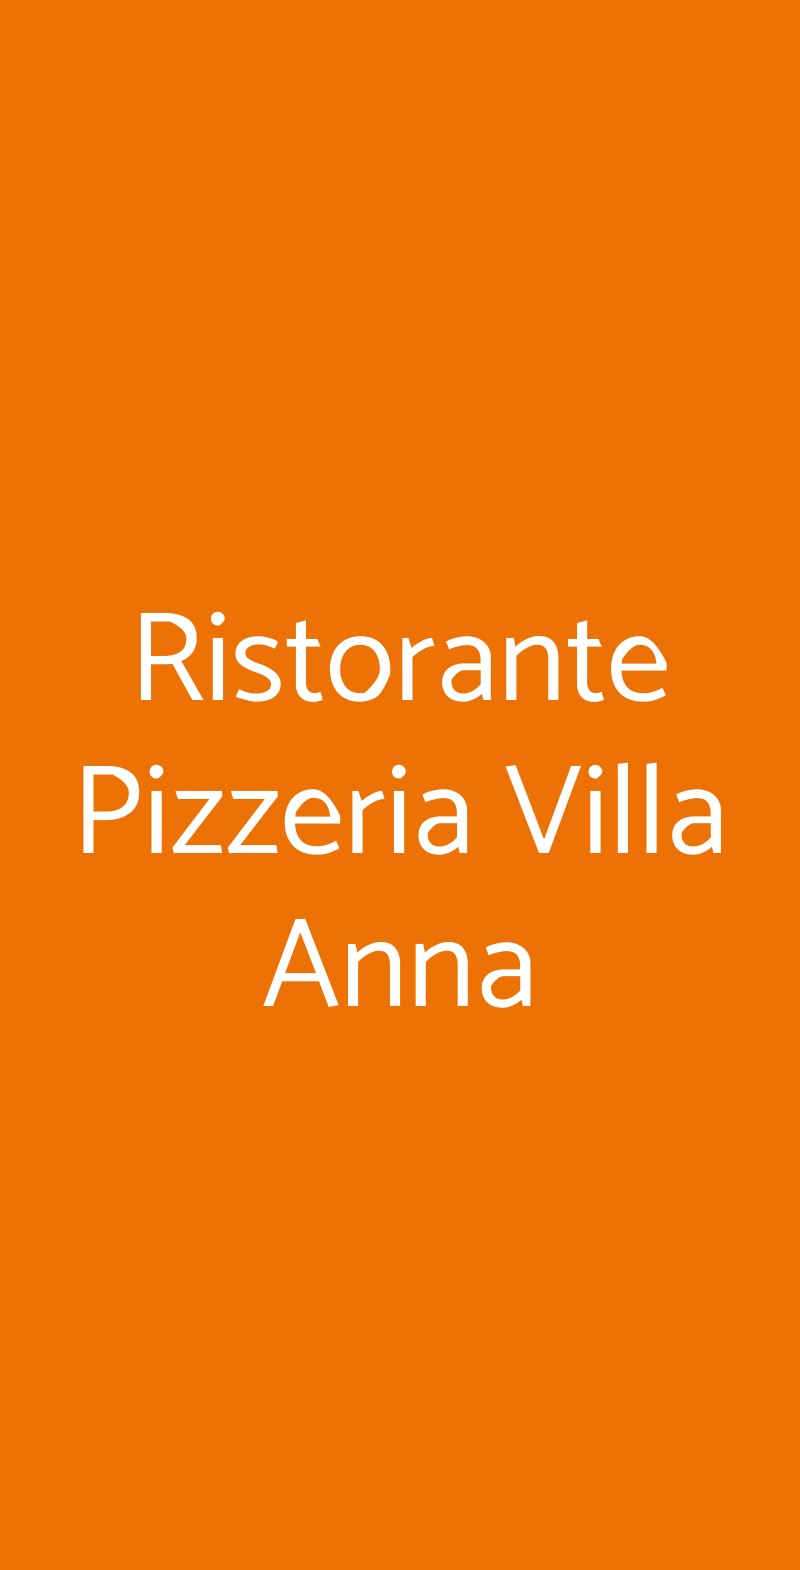 Ristorante Pizzeria Villa Anna Napoli menù 1 pagina